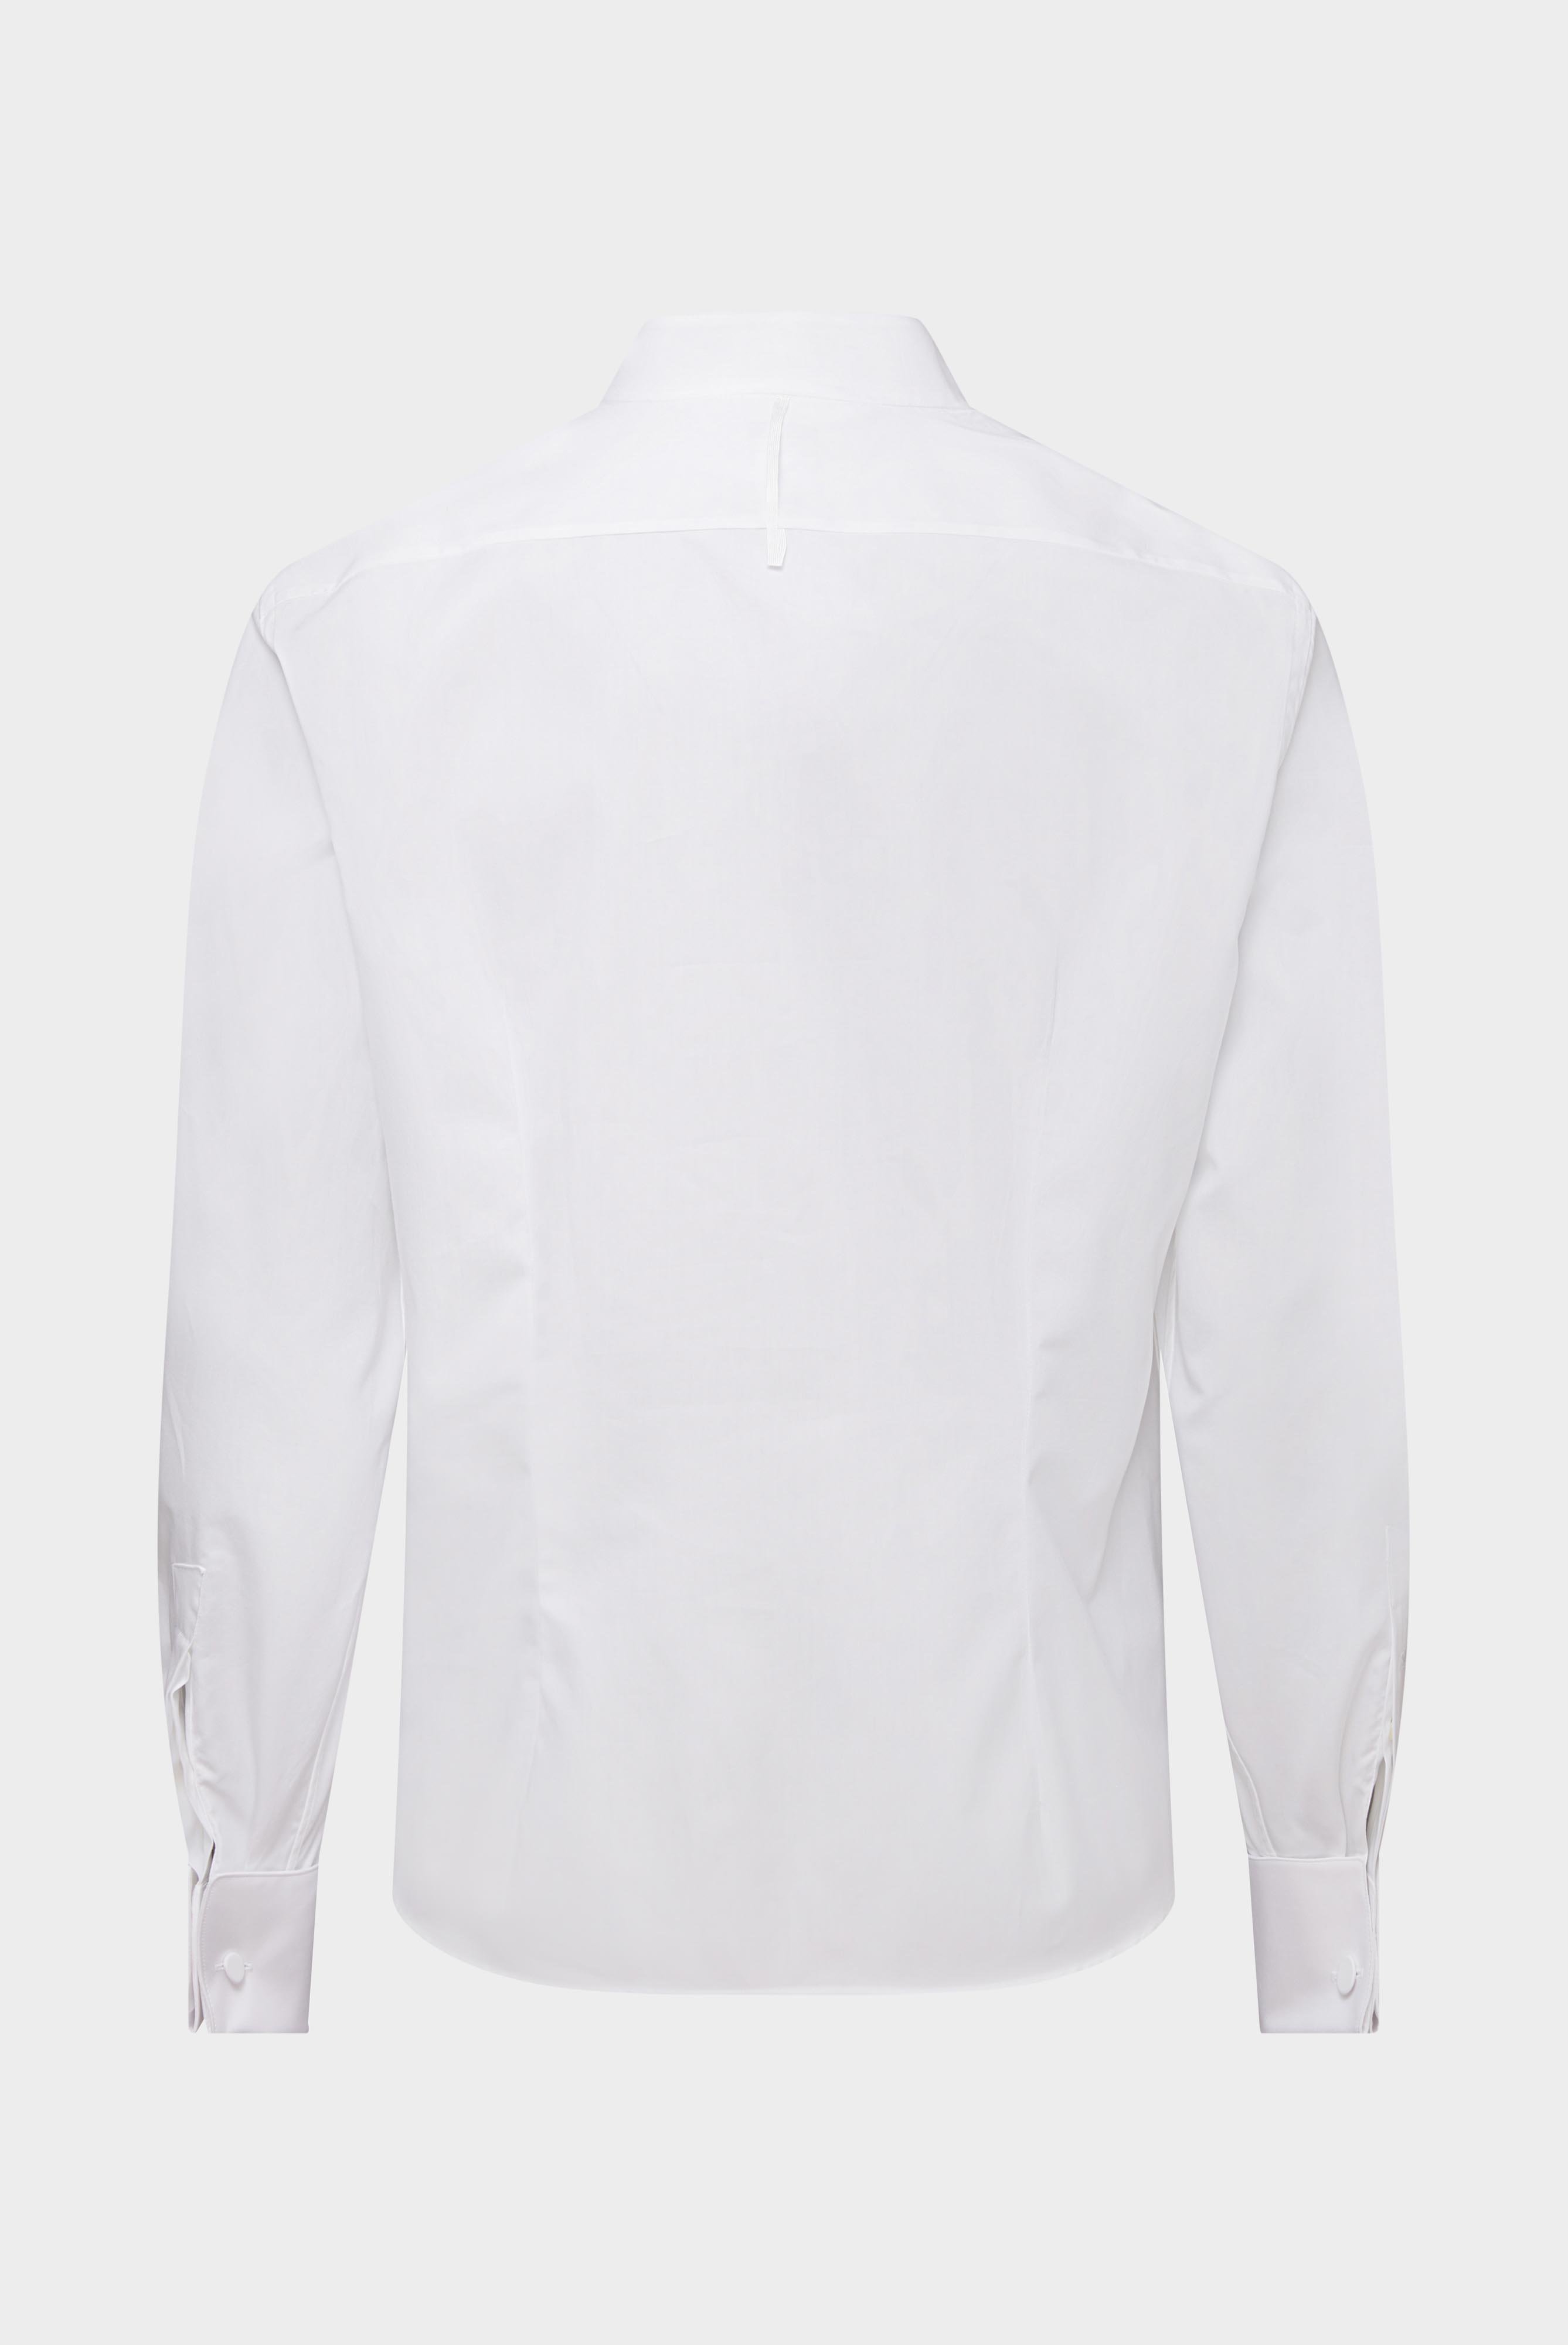 Festliche Hemden+Smokinghemd mit Kläppchenkragen Tailor Fit+20.2064.NV.130648.000.37